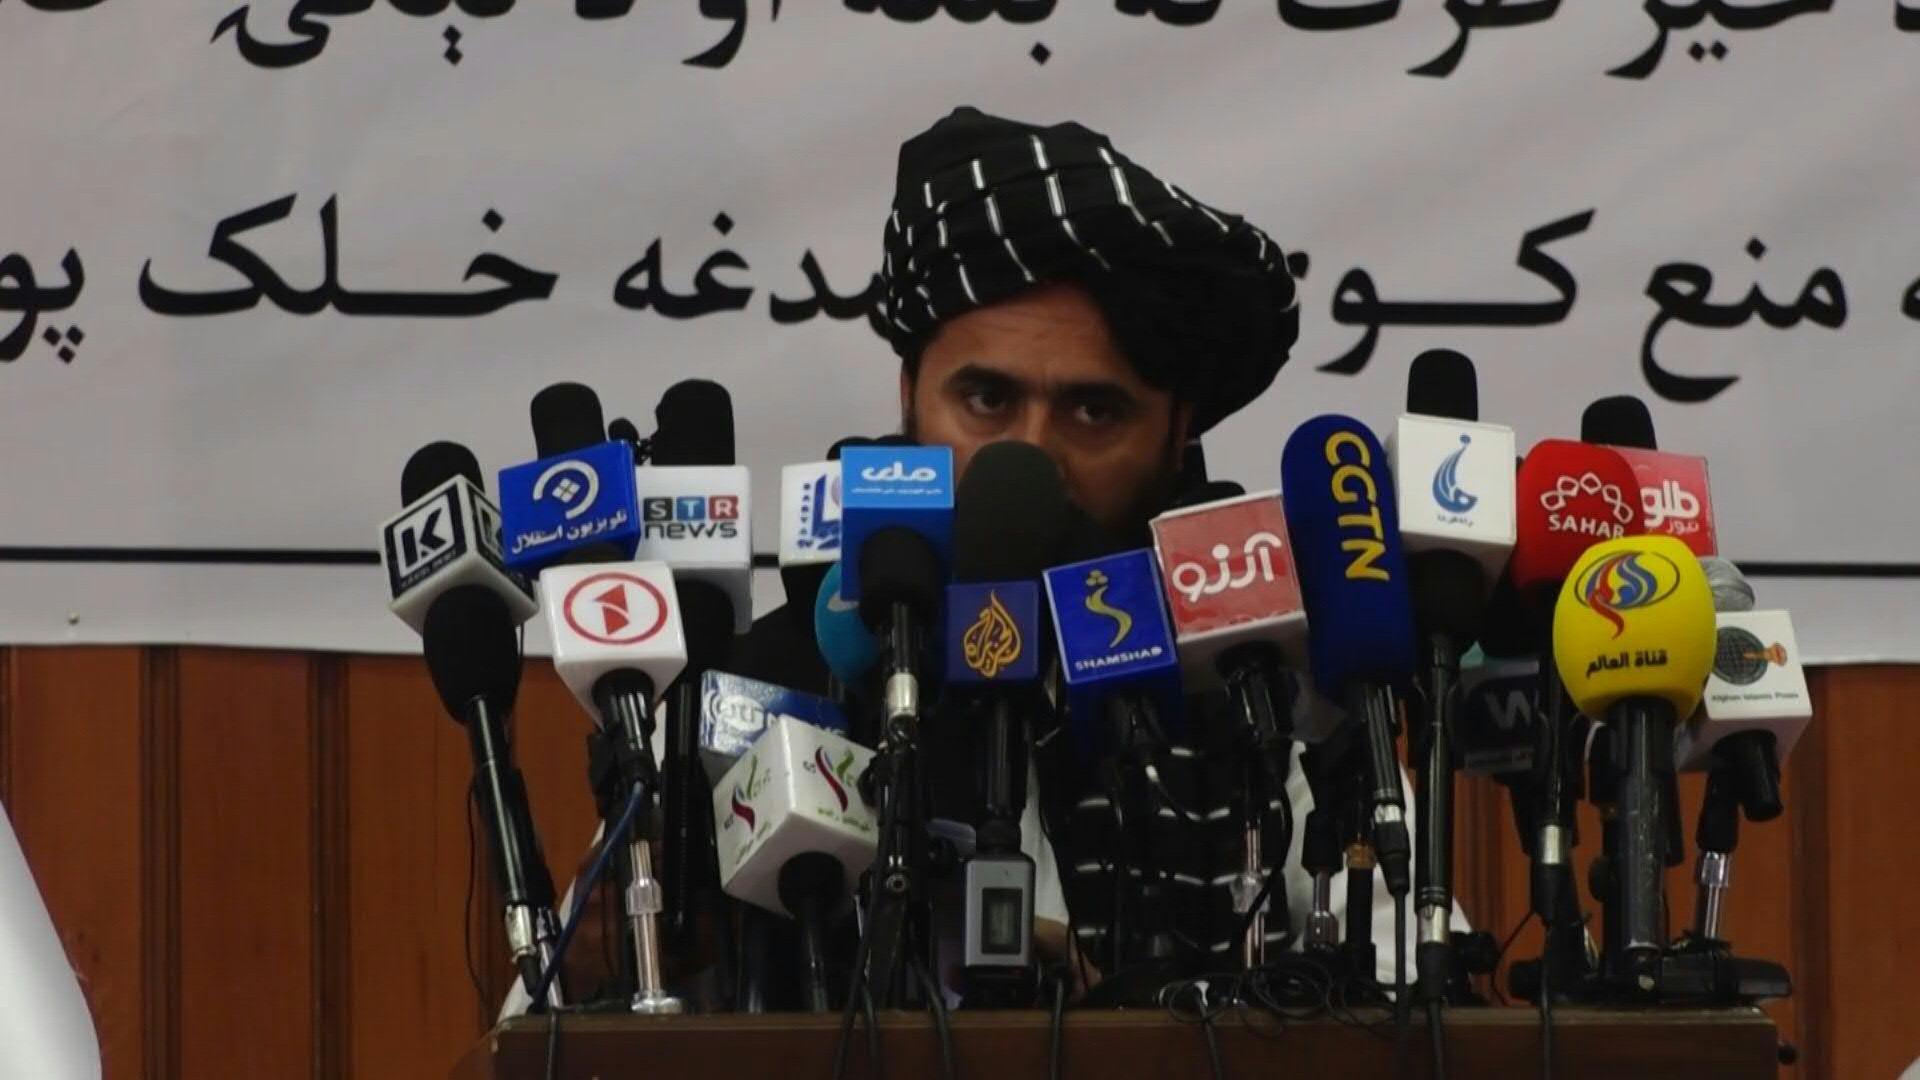 Conferencia de prensa en que los talibanes ordenan a las mujeres que en público usen un velo que las cubra de pies a cabeza, preferiblemente un burka, que solo deja una rejilla a la altura de los ojos. 